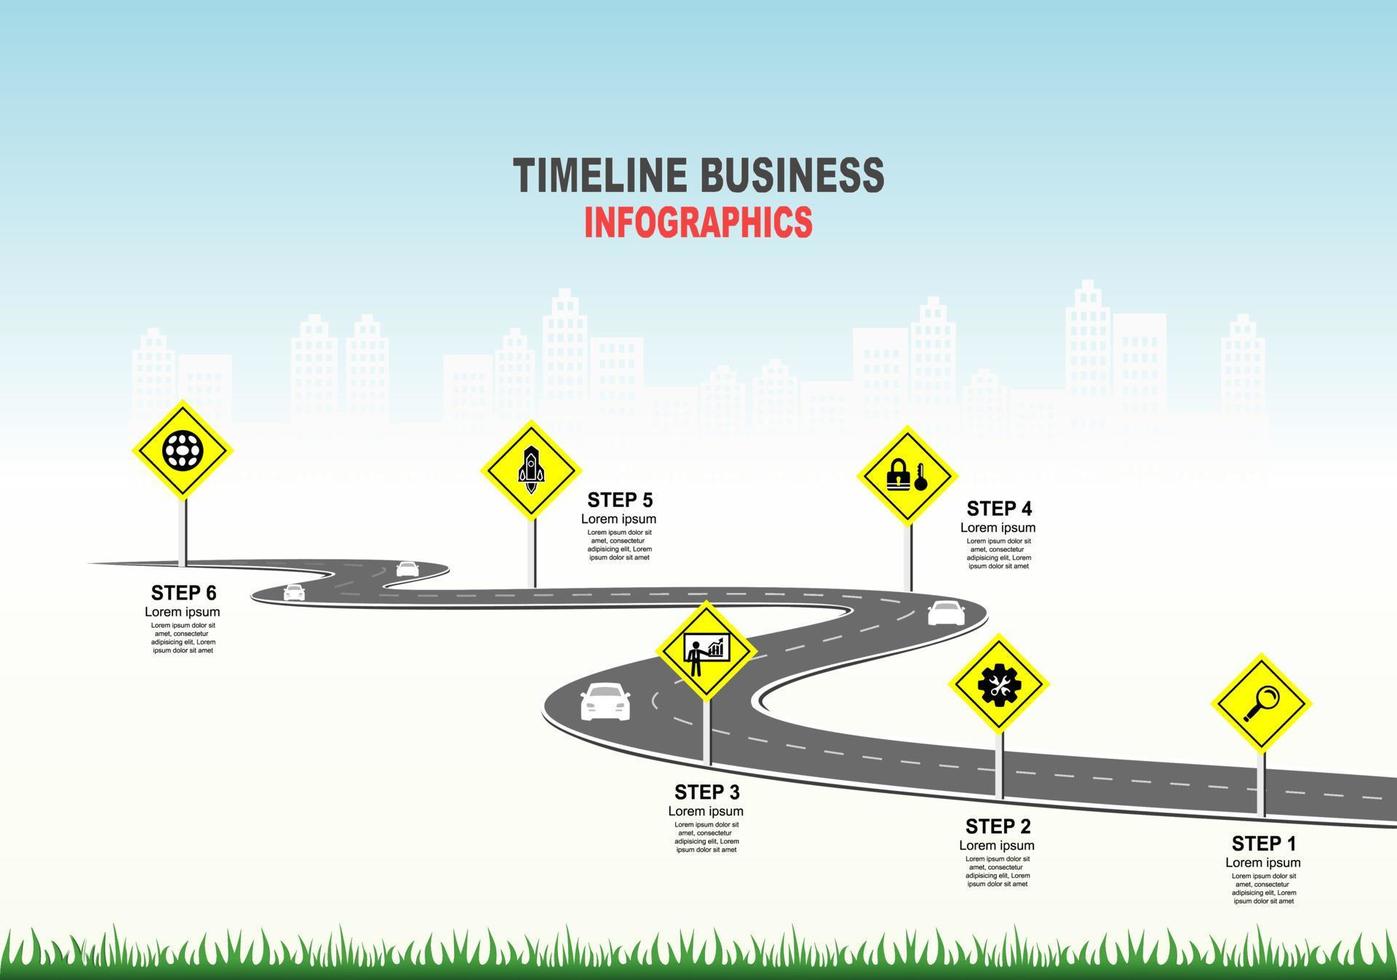 vektor mall infographic tidslinje för affärsverksamhet med flaggor och platshållare på krökta vägar. symboler, steg för framgångsrik affärsplanering lämpliga för reklam och presentationer